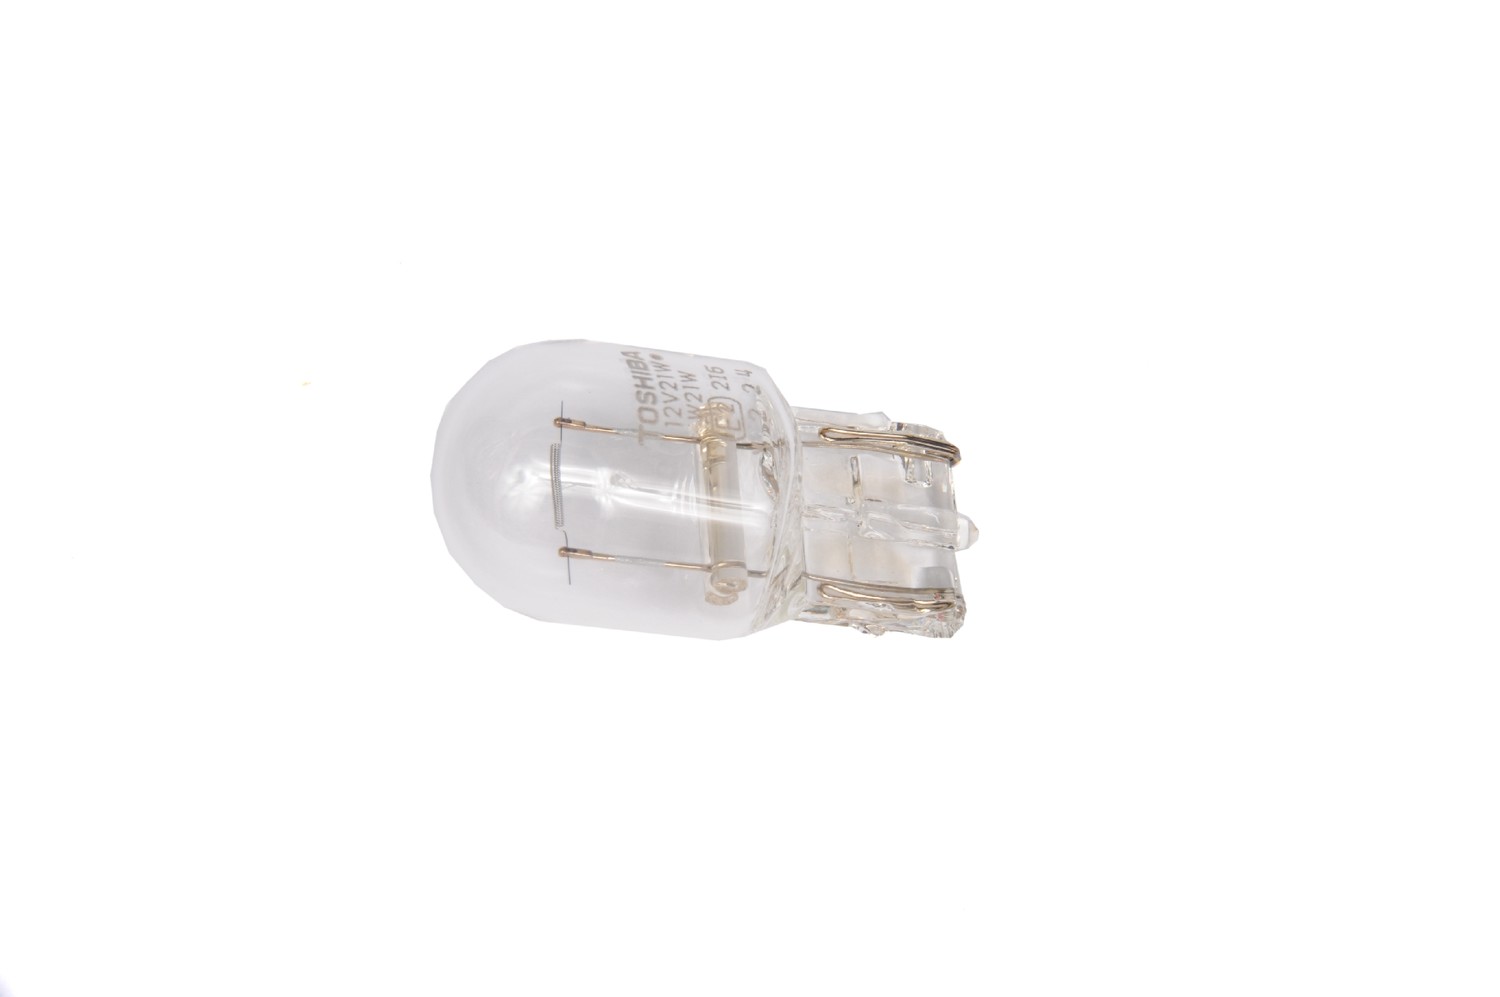 GM GENUINE PARTS - Fog Light Bulb - GMP 13503356